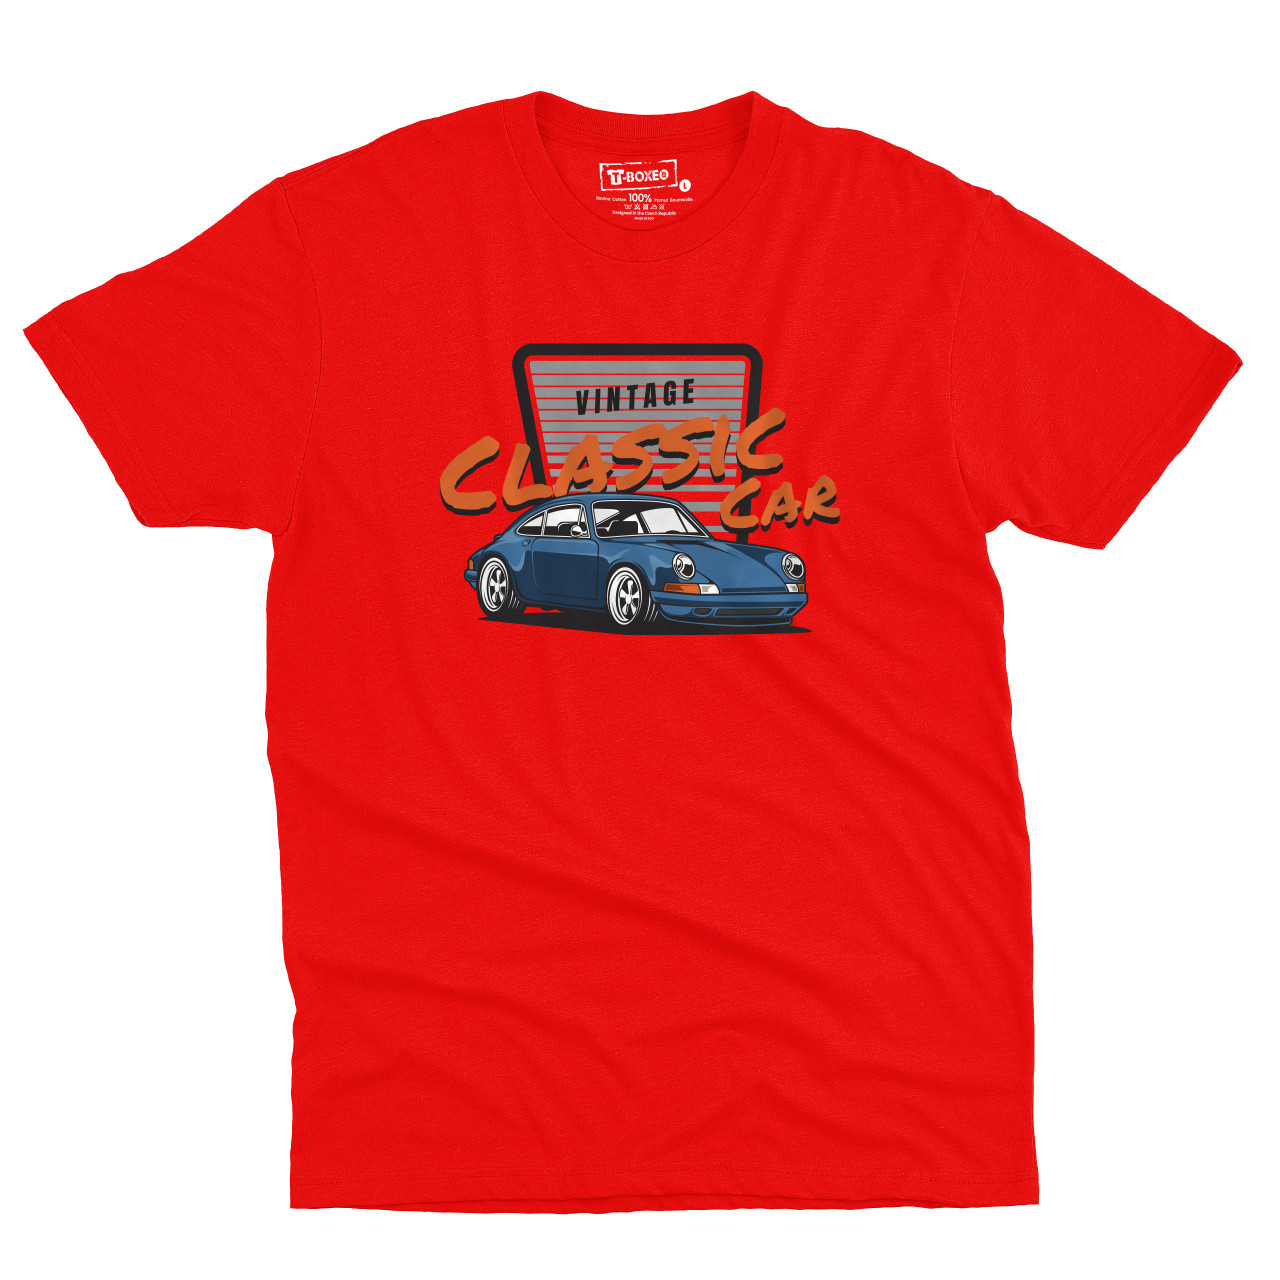 Pánské tričko s potiskem “Vintage Classic Car, modré Porsche"